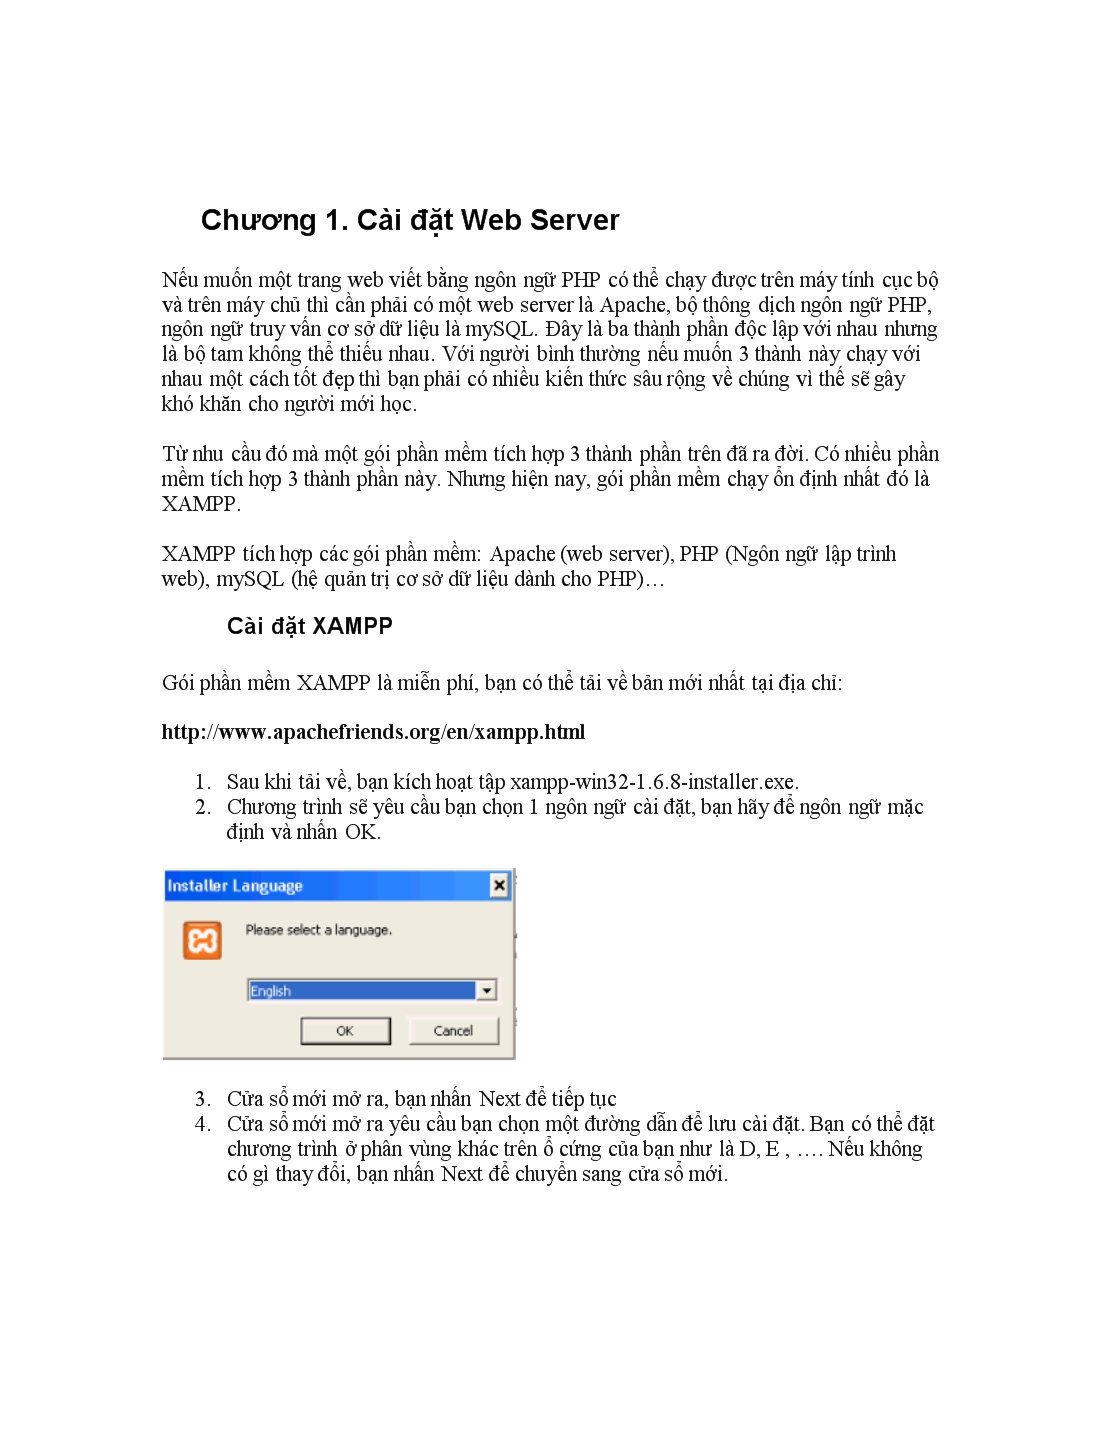 Hướng dẫn cài đặt Web Server - Joomla và quản trị trang Web trang 3